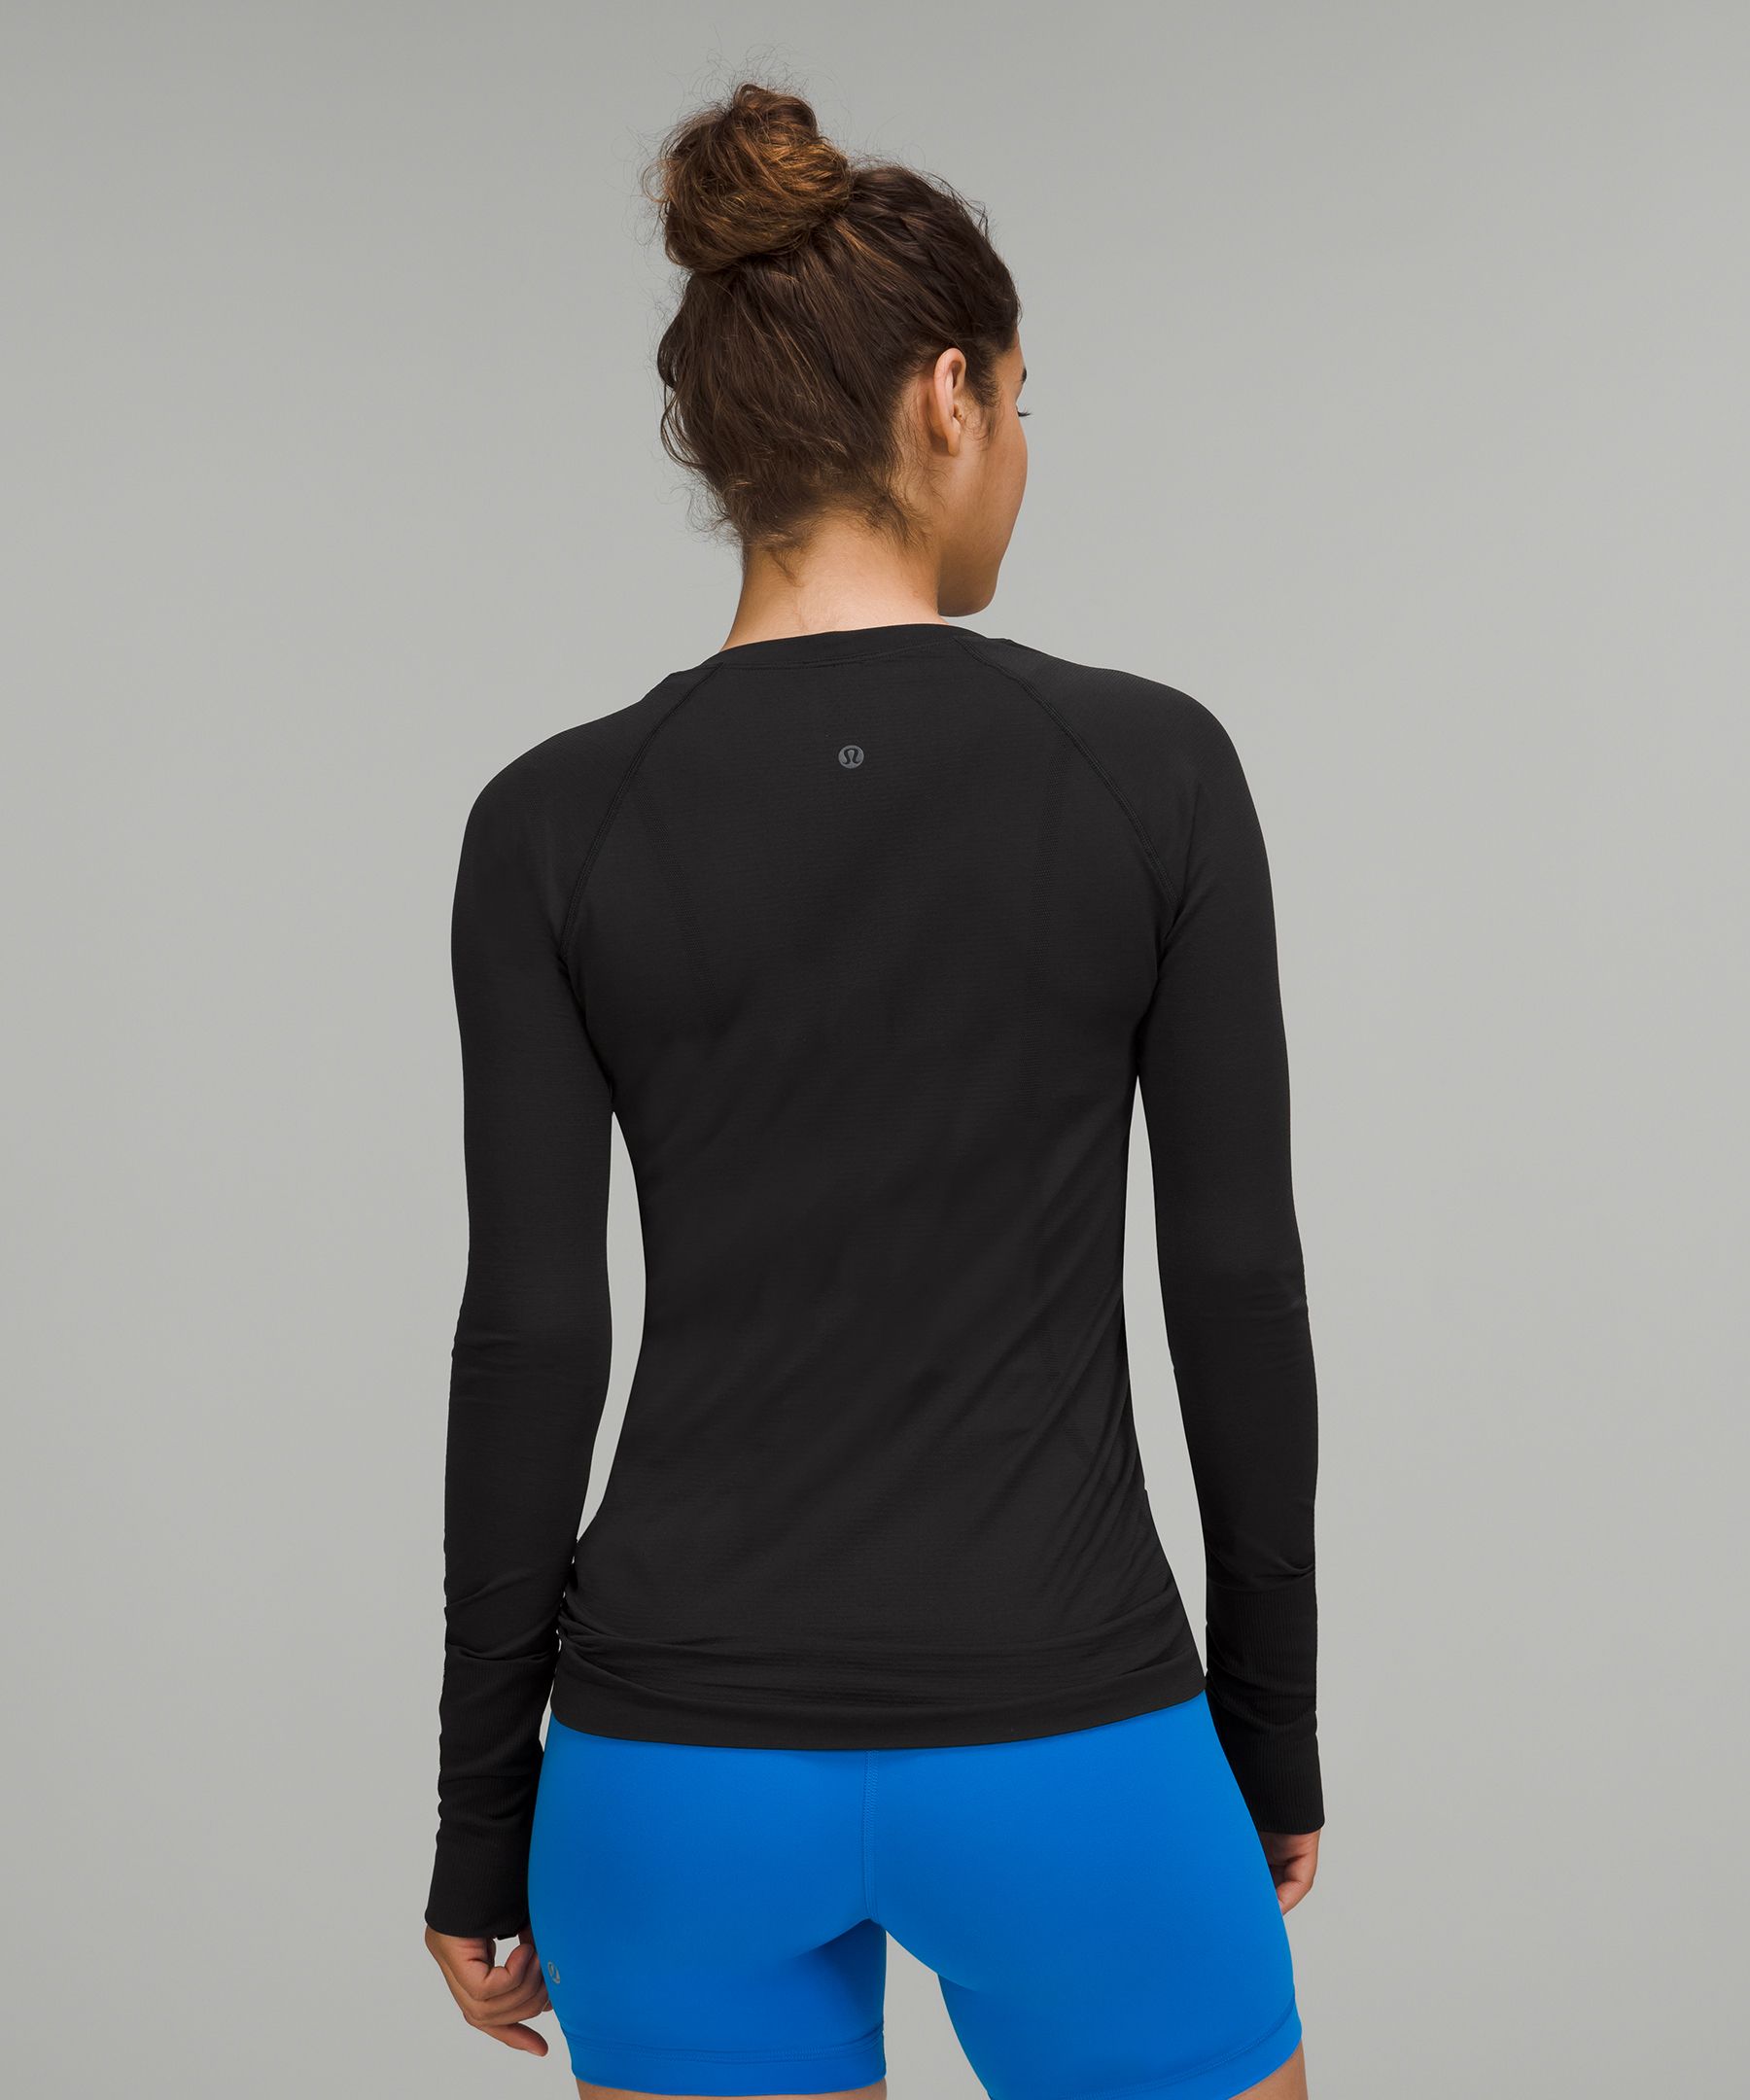 Swiftly Tech Long-Sleeve Shirt 2.0 *Hip Length | Women's Long 